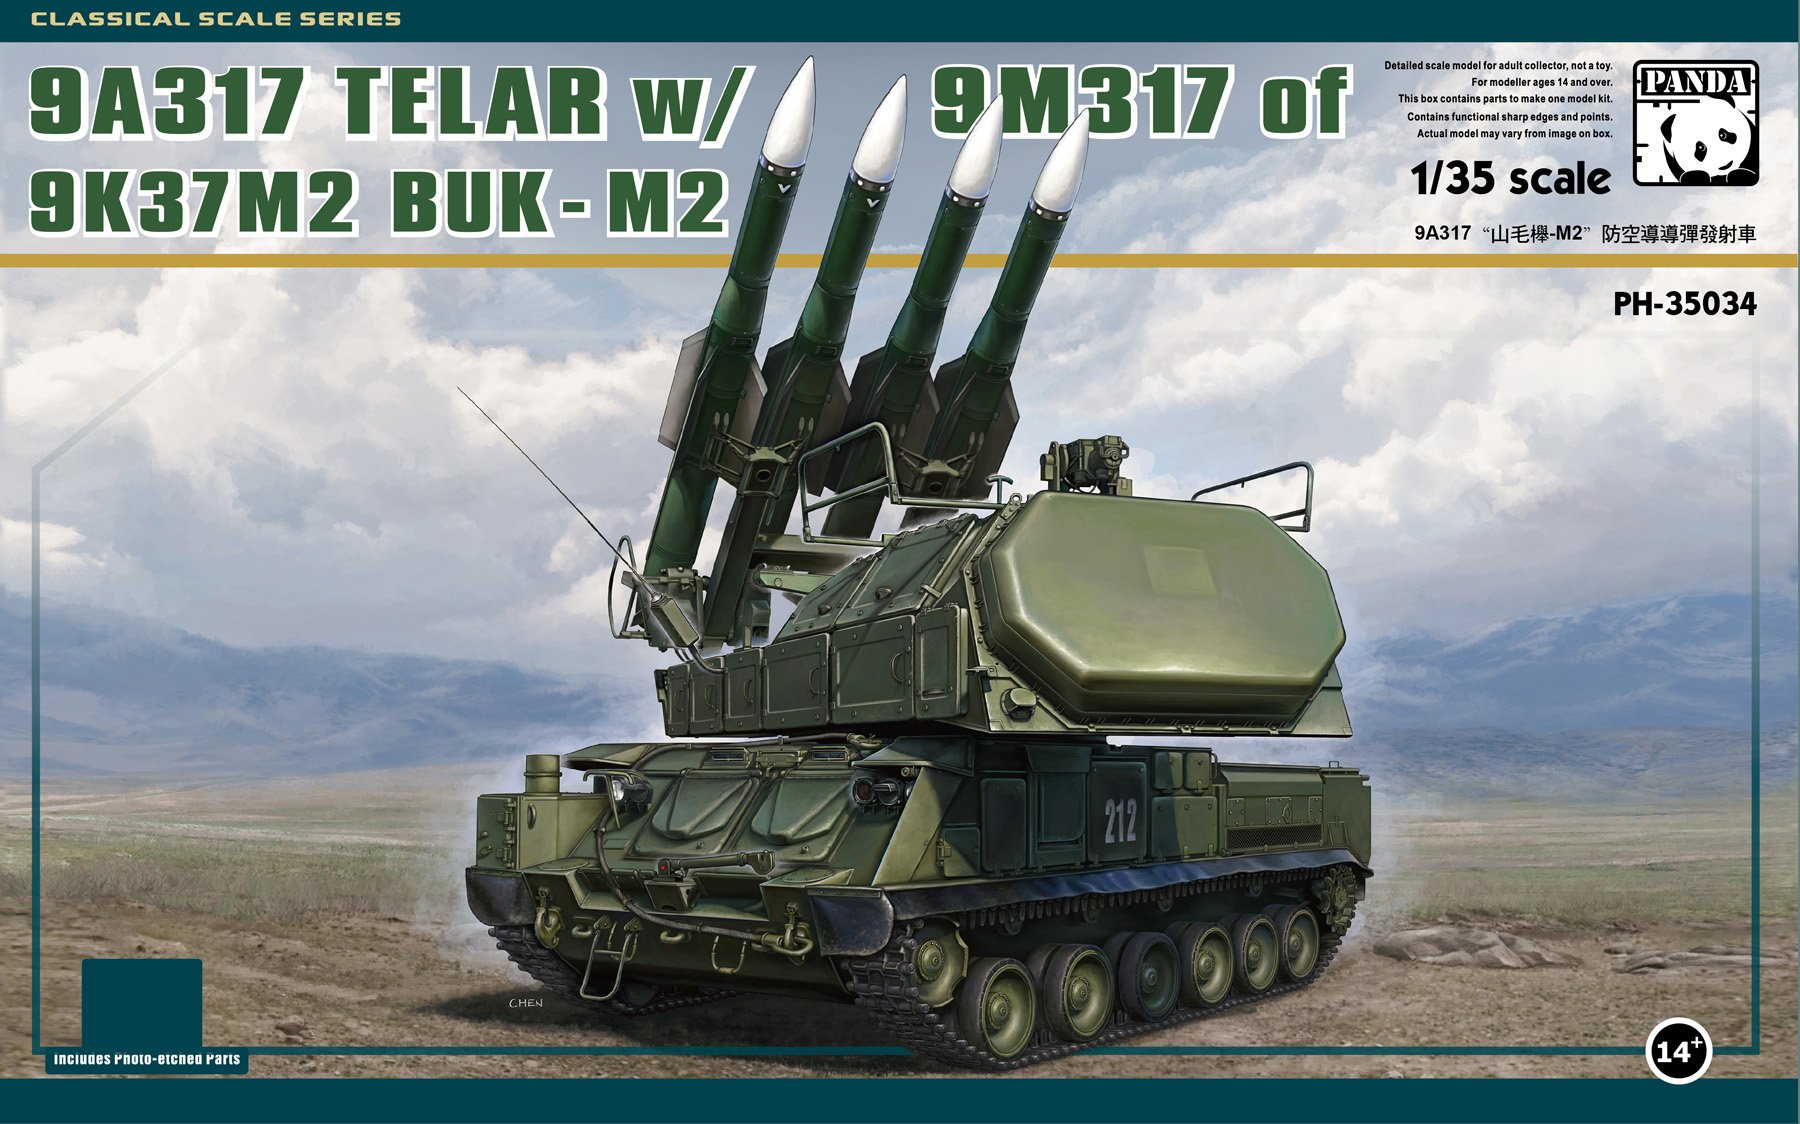 1/35 现代俄罗斯 9A137 山毛榉-M2防空导弹发射车 - 点击图像关闭